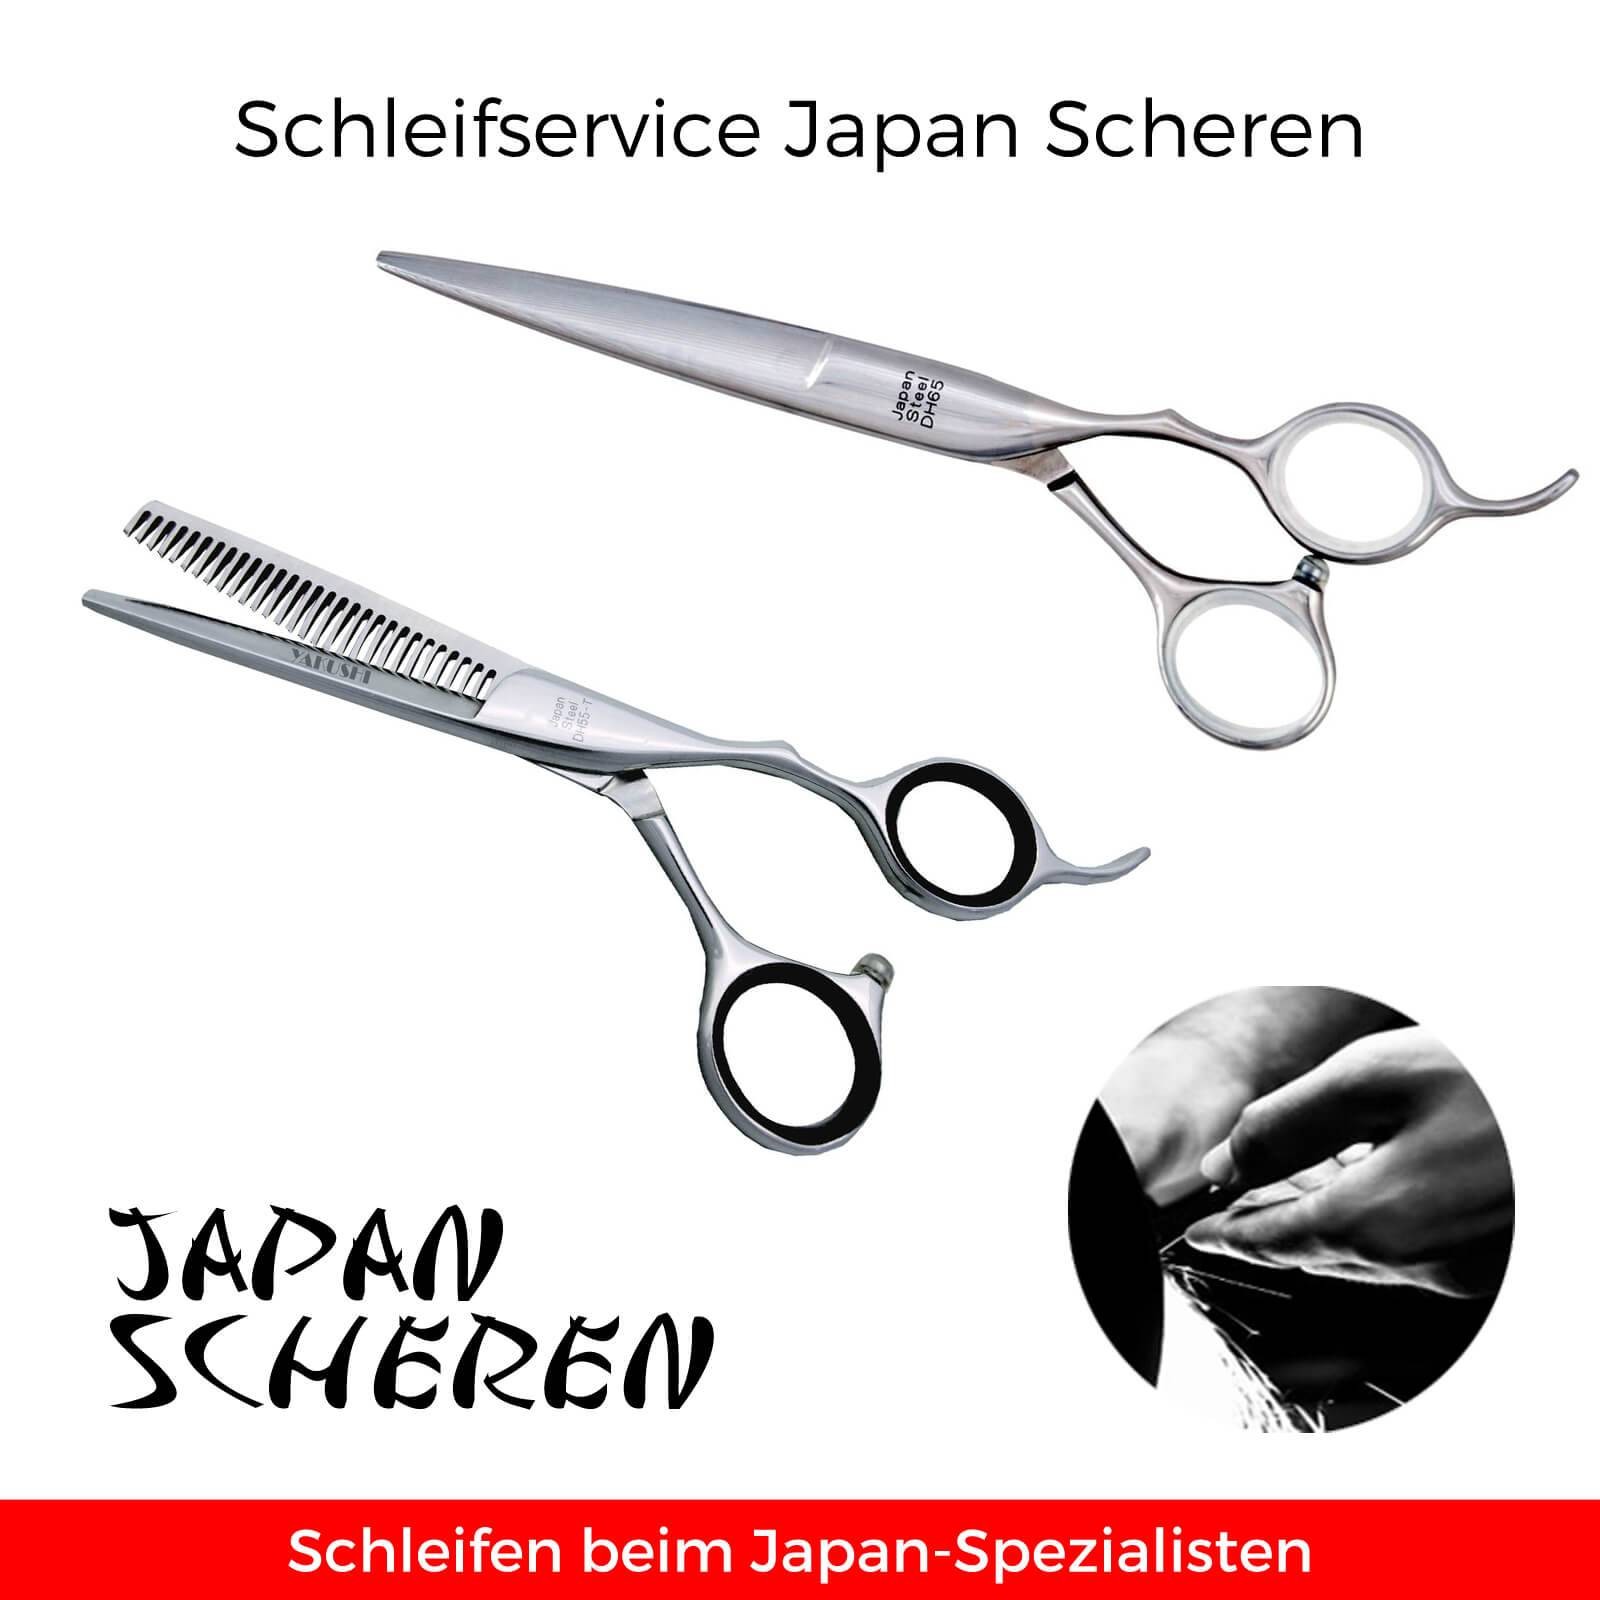 Schleifservice Japan- und Spezialscheren | Friseurscheren und Co